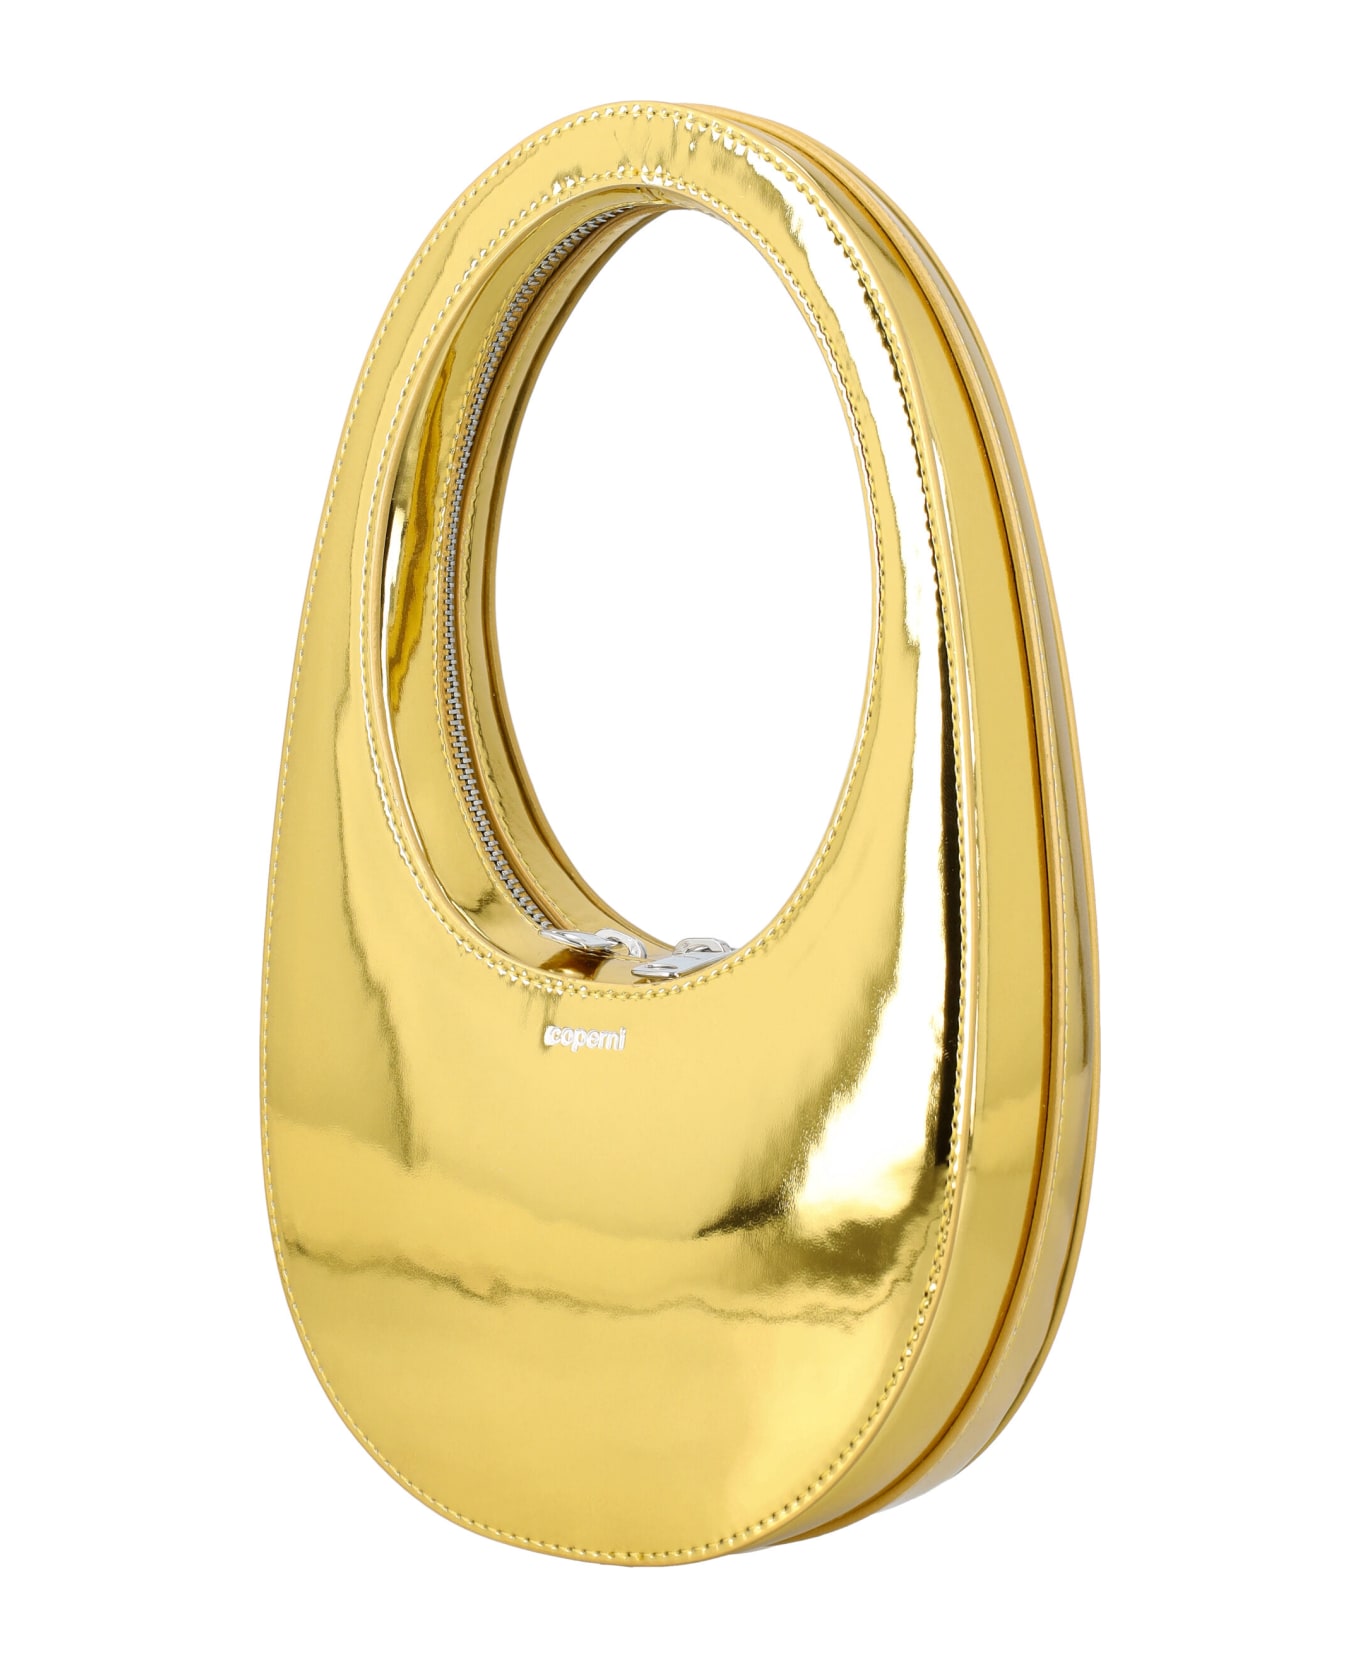 Coperni Metallic Mini Swipe - GOLD